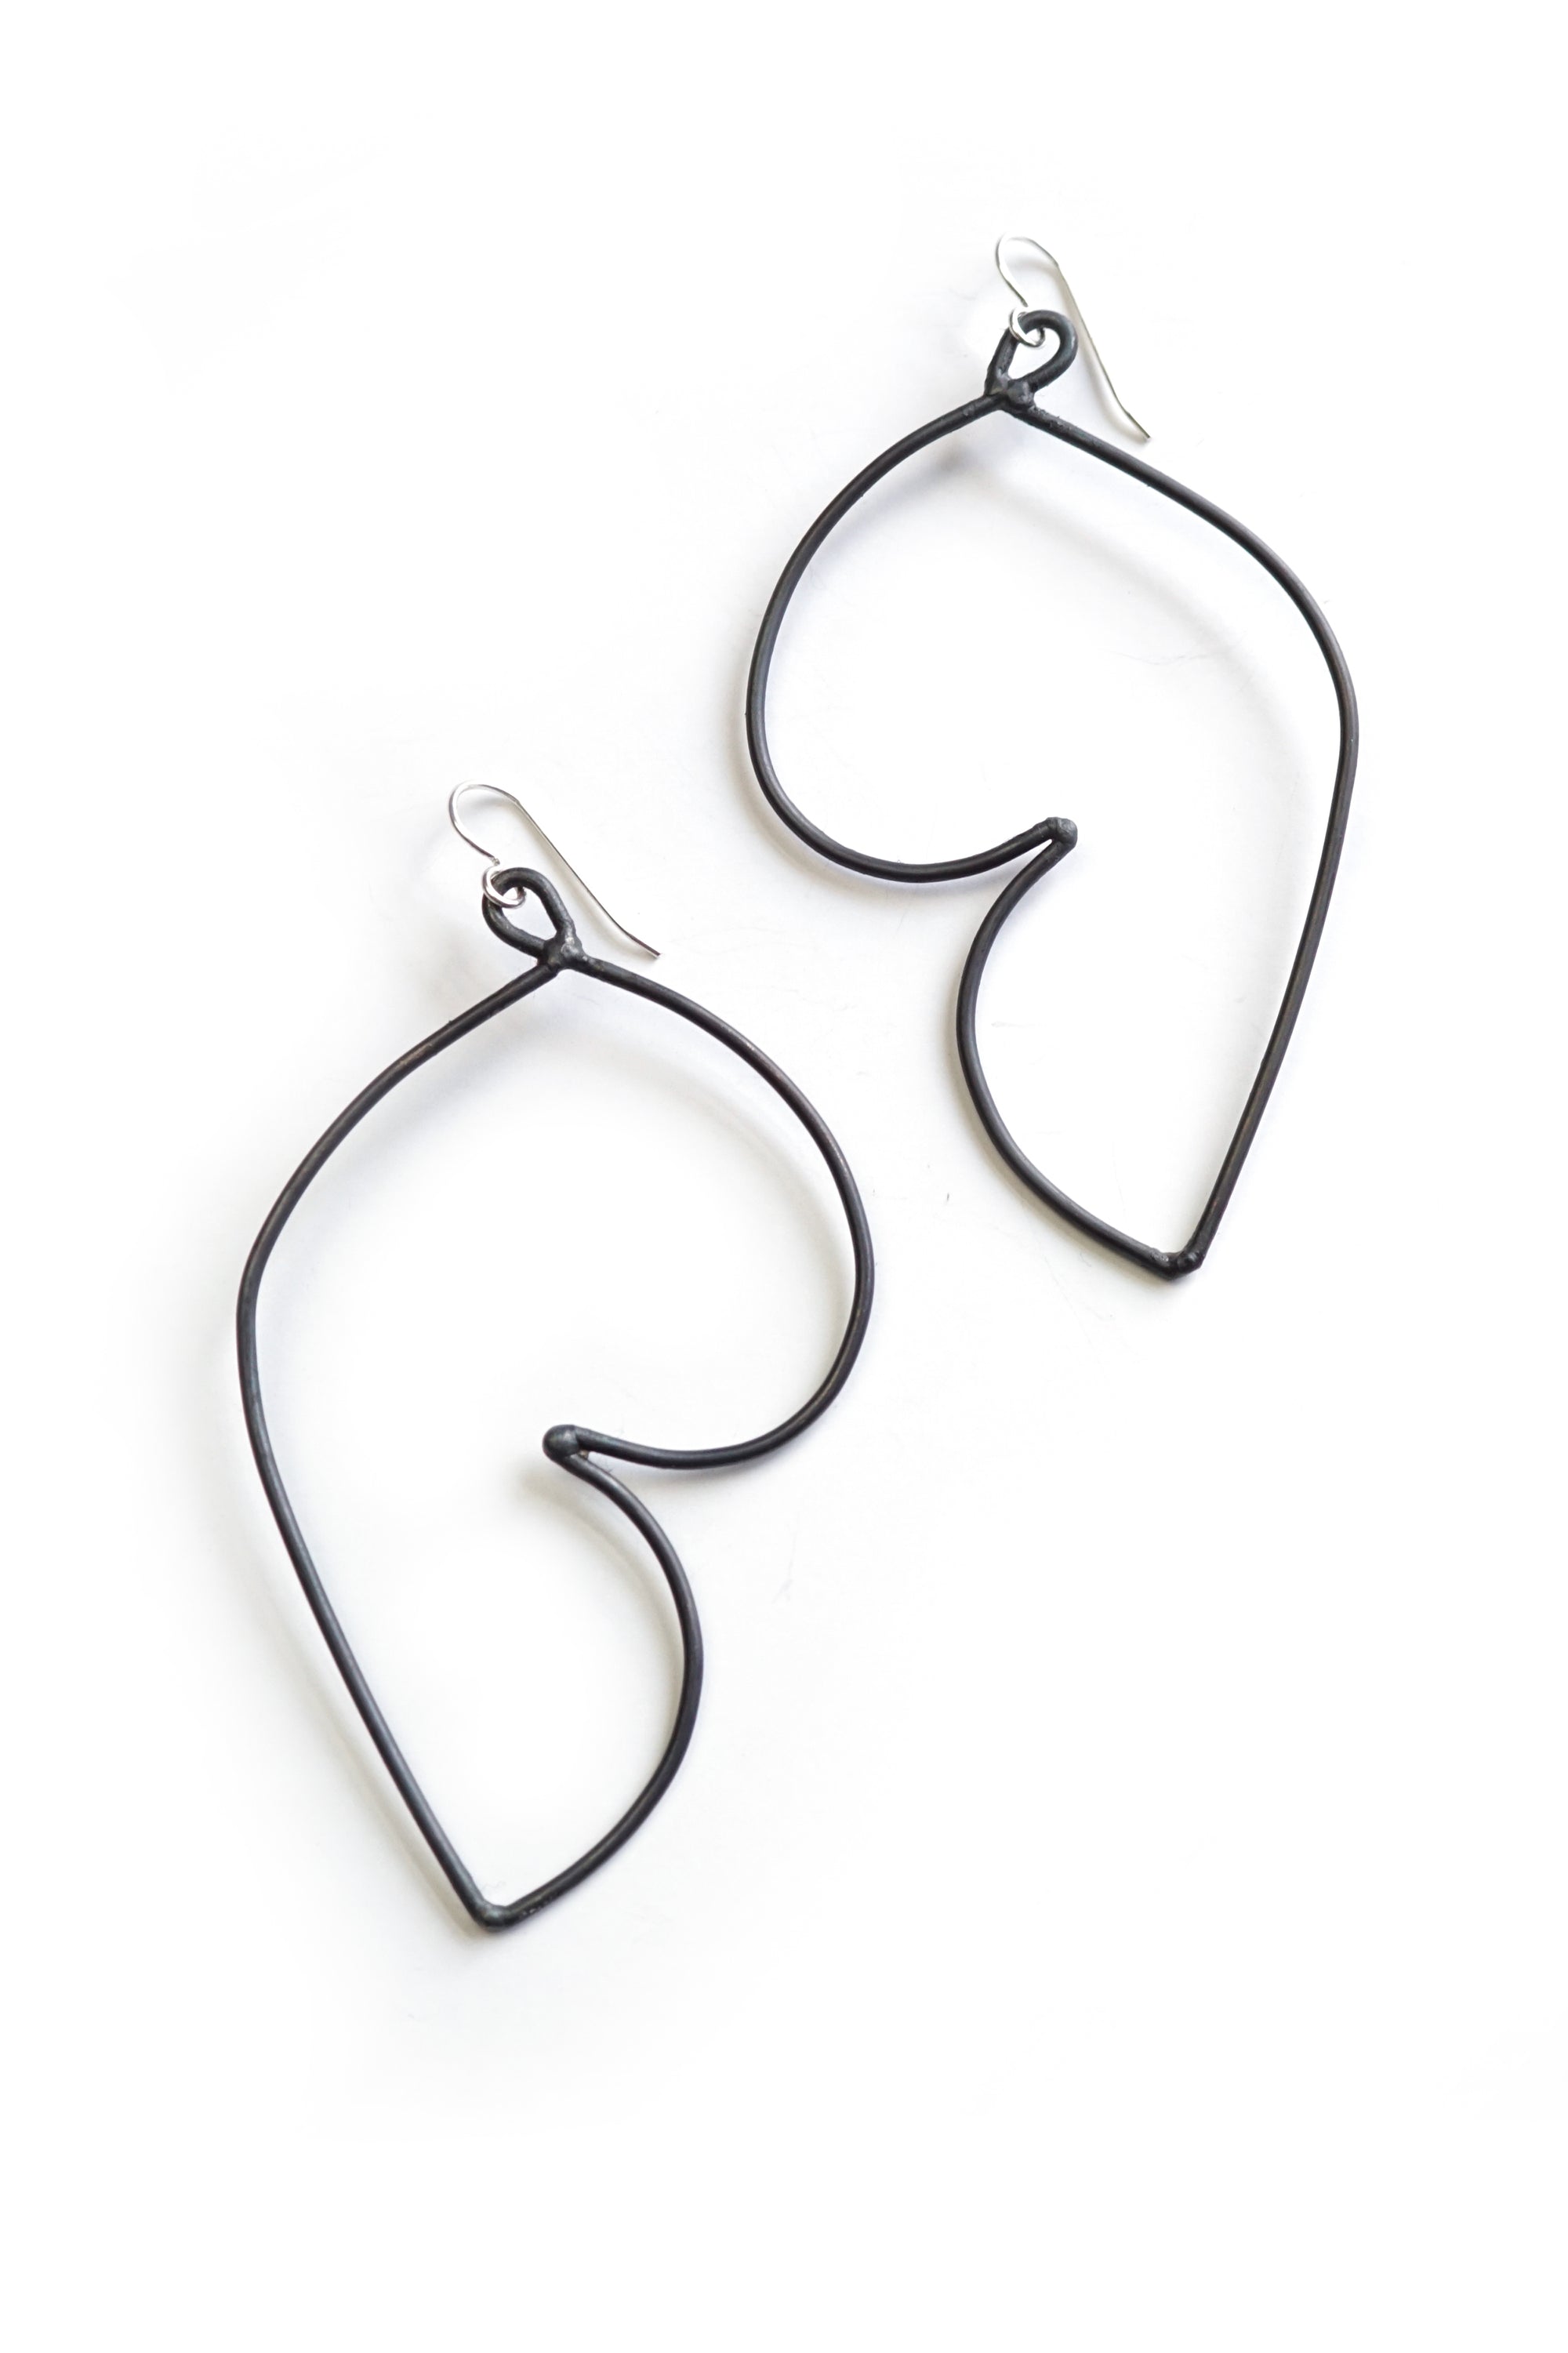 Volupte Statement Earrings in black steel, silver, or bronze